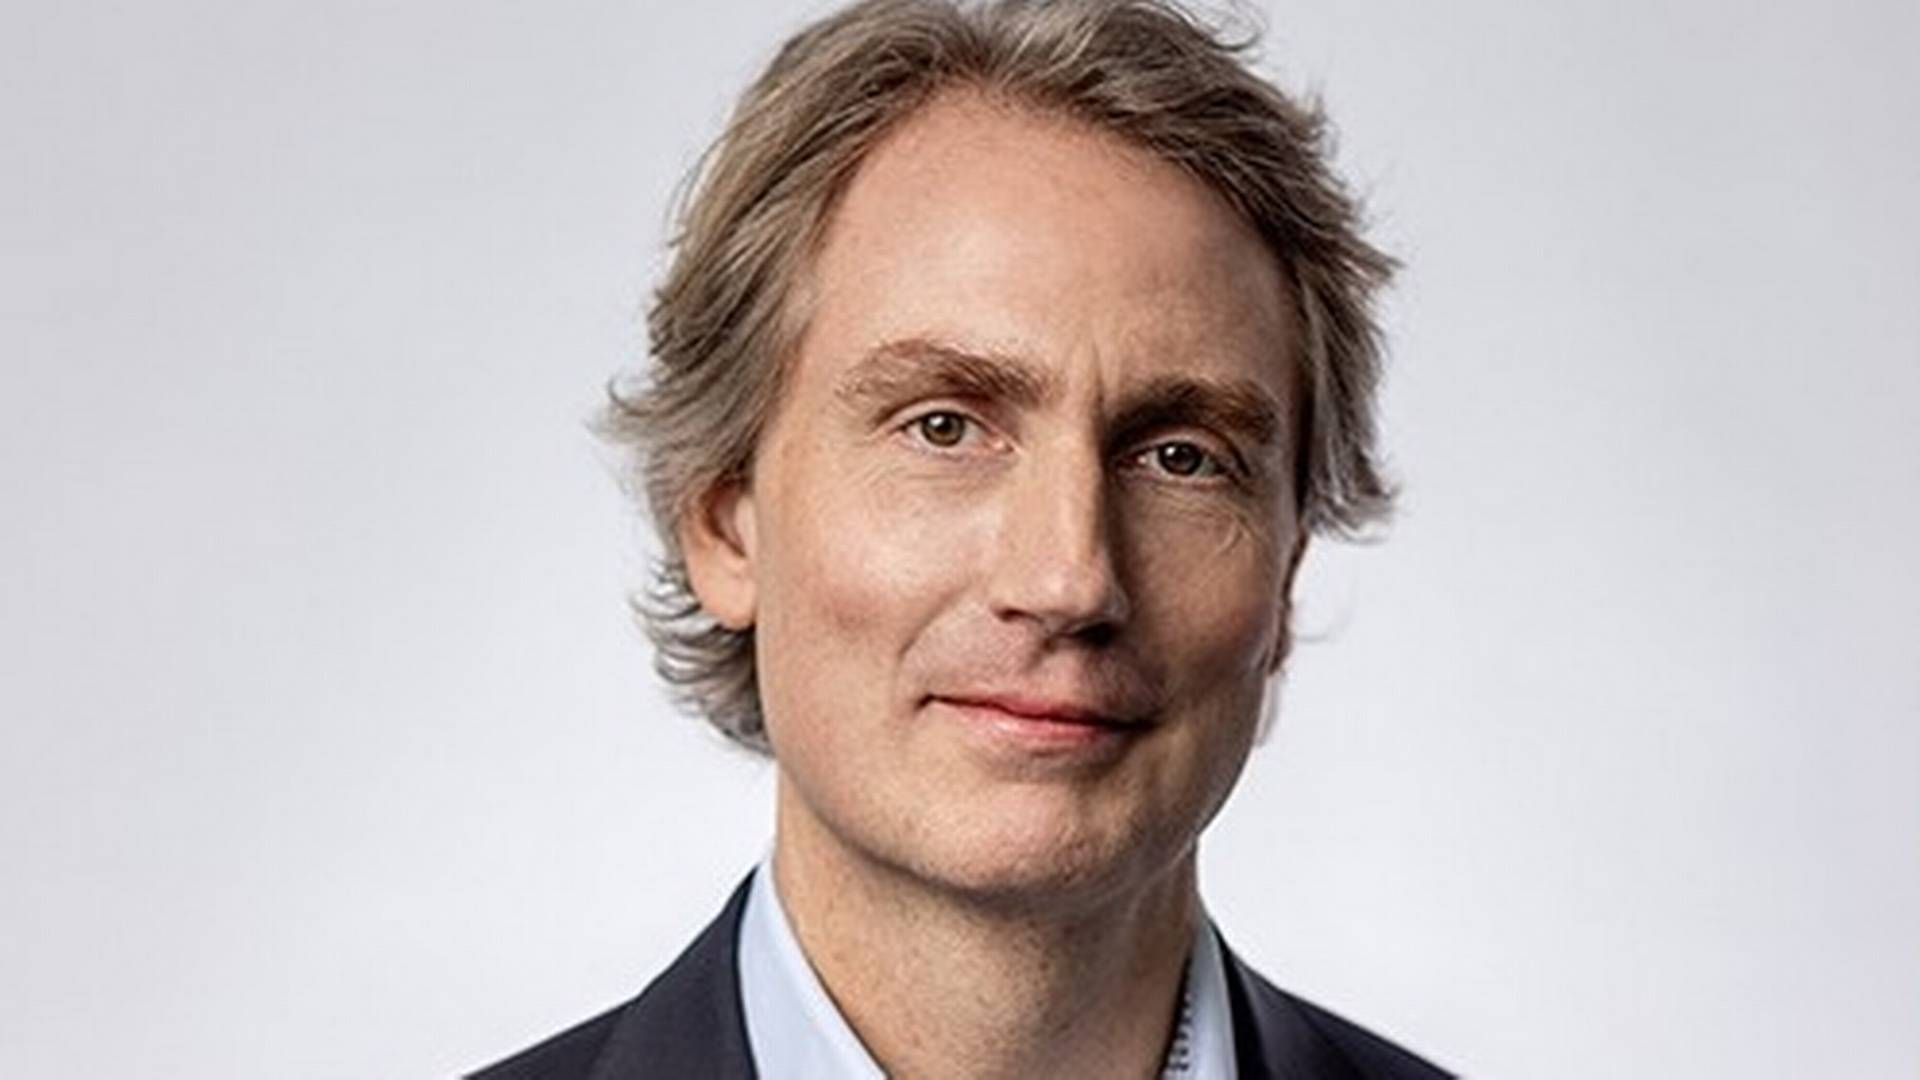 Erik Selin er adm. direktør i Balder, som han også er største aktionær i. | Foto: PR / Balder